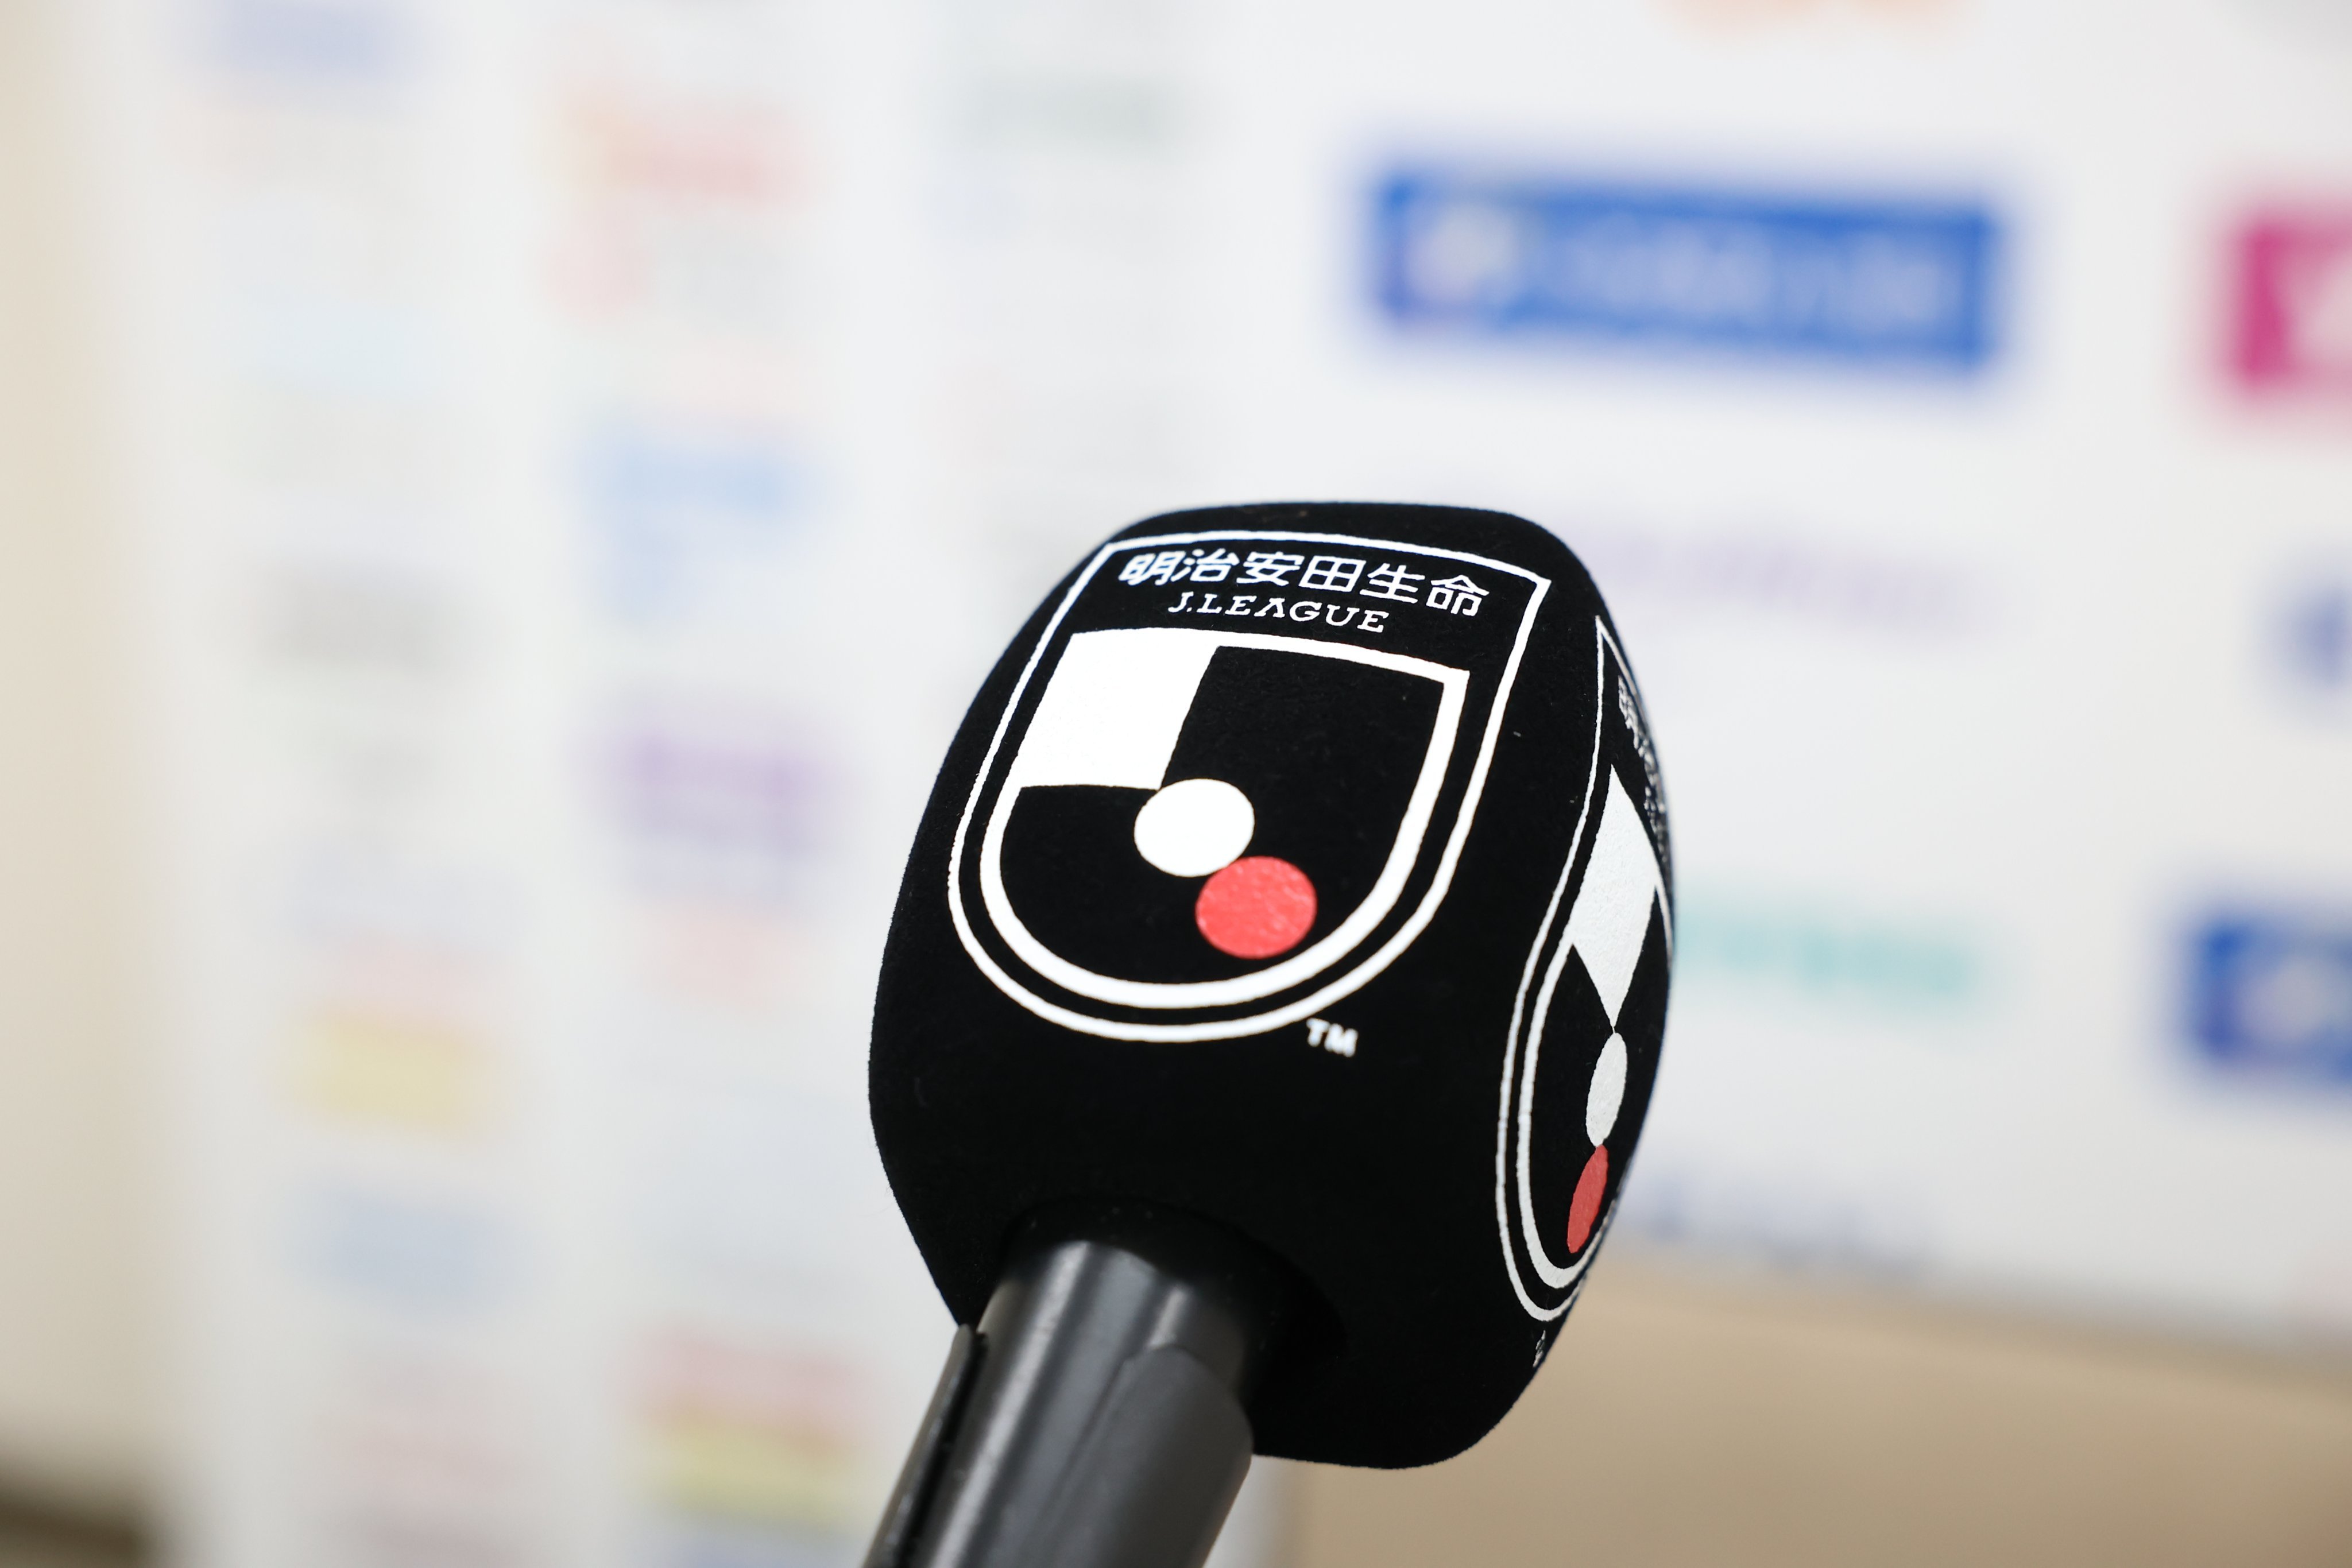 Jadwal Siaran Langsung J1 League Pekan Ke-16